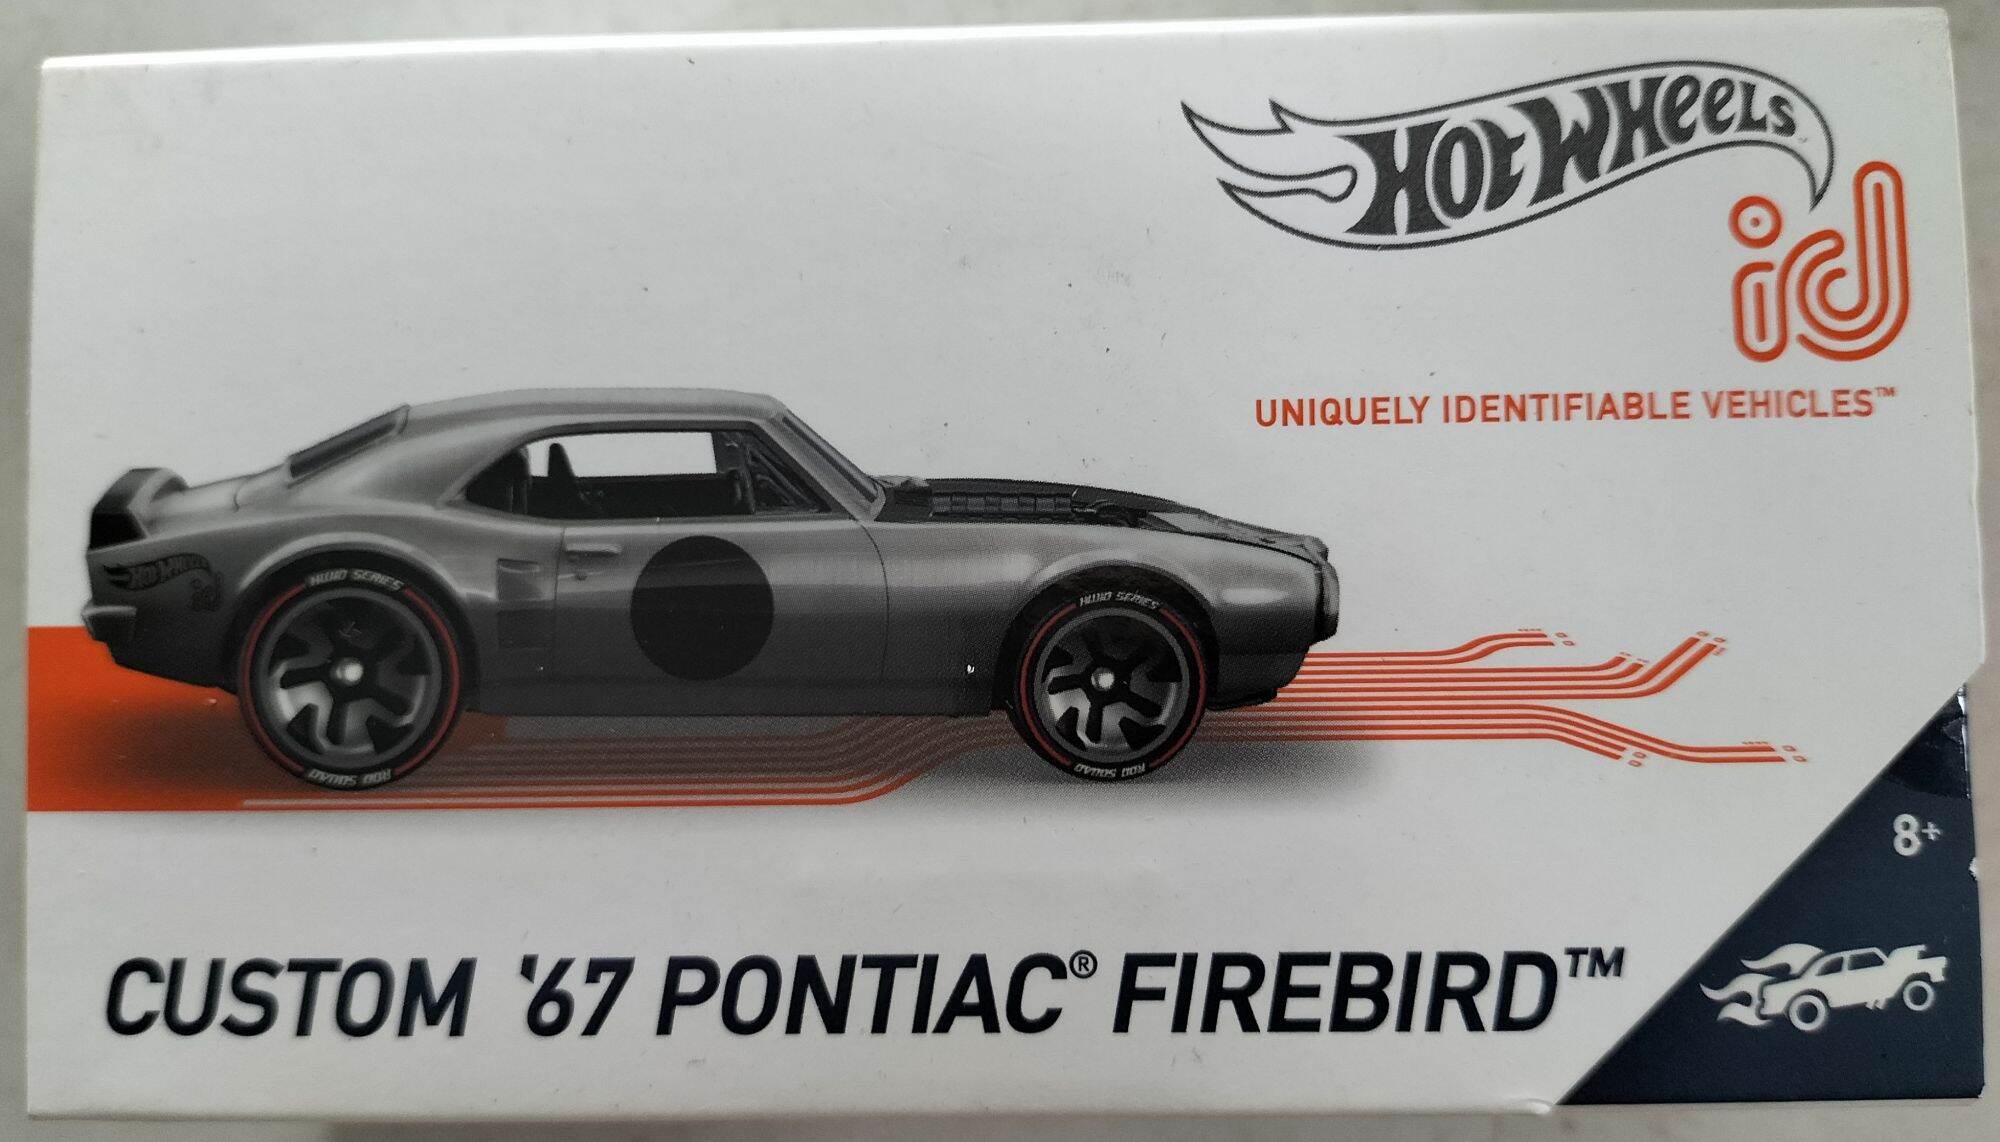 Hot wheels id car rod squad Custom 67 Pontiac firebird